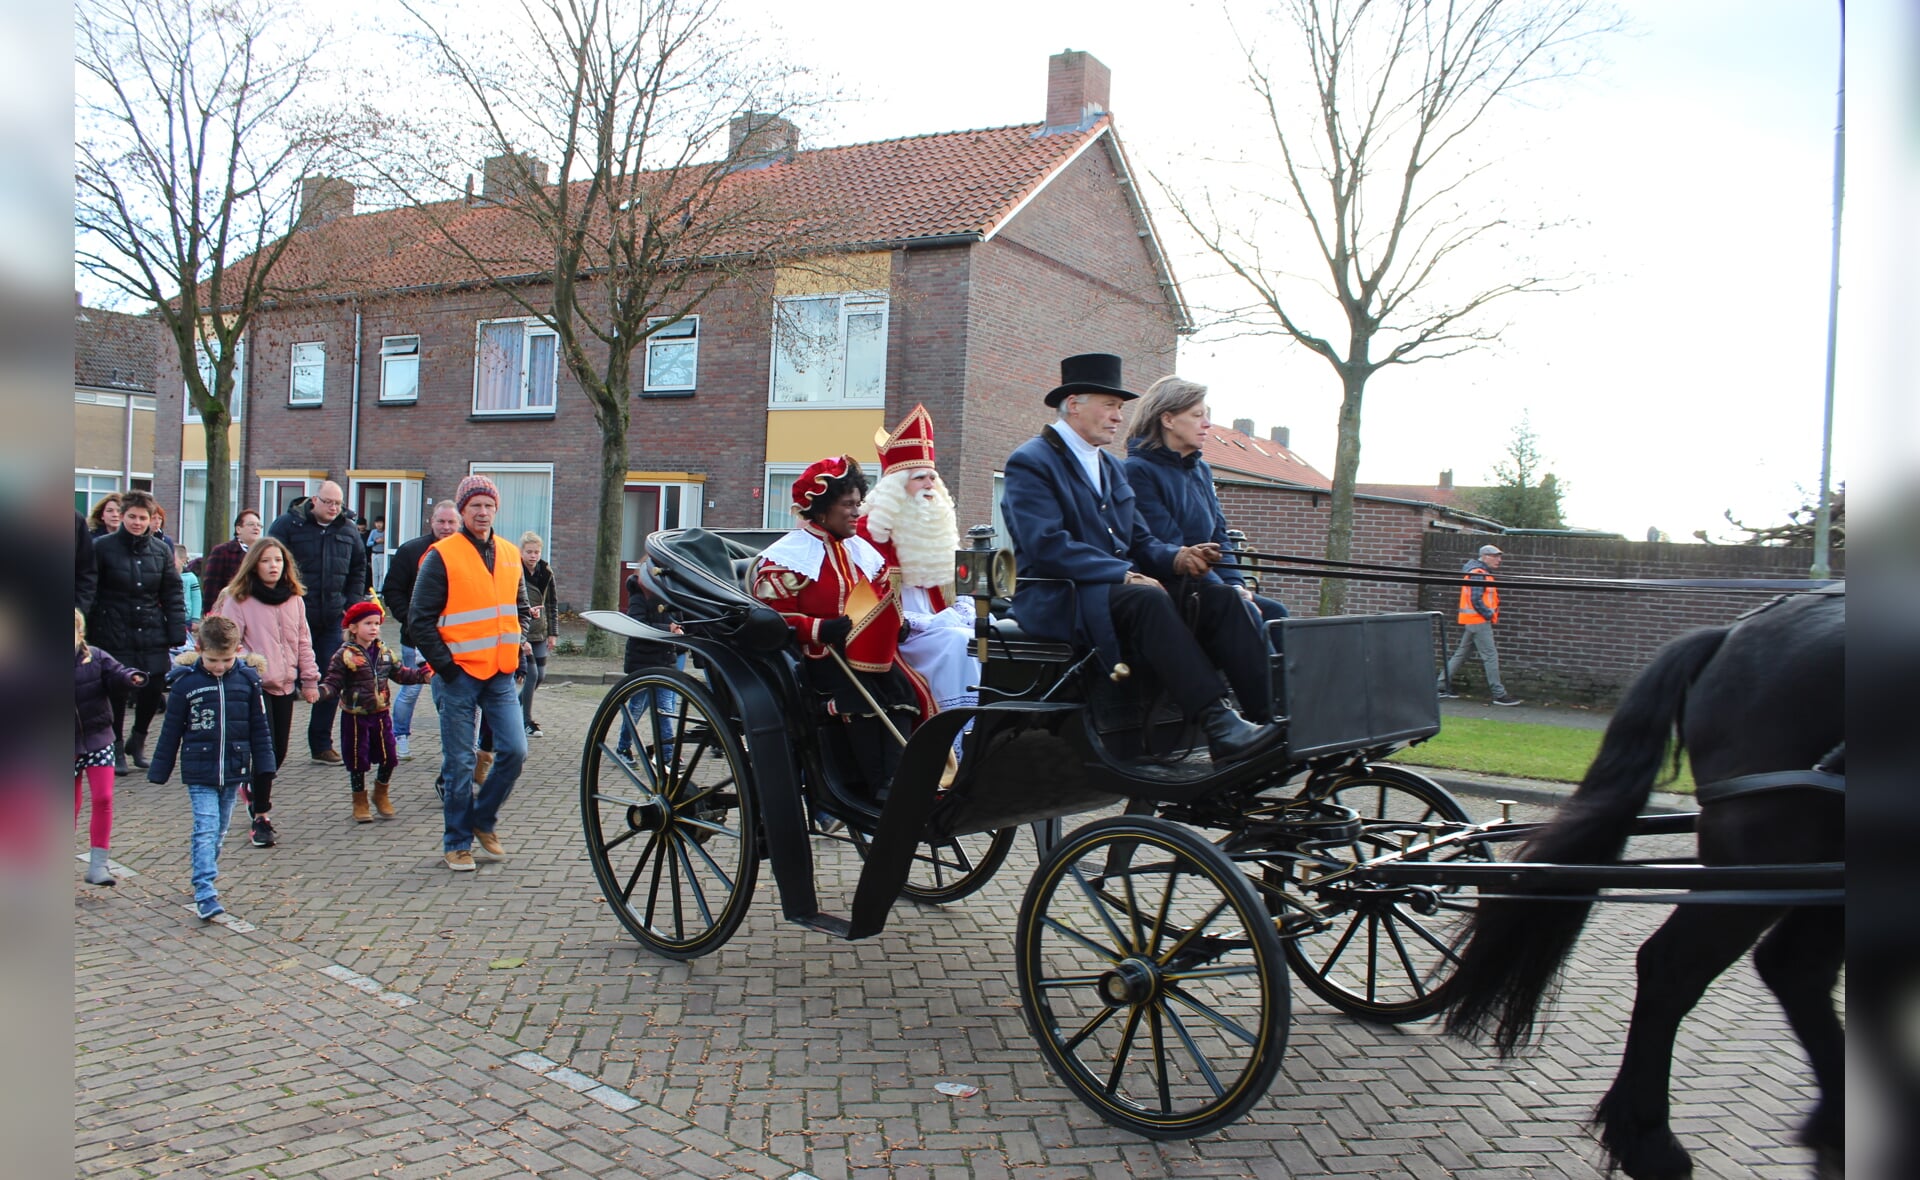 Impressie van de rijtoer die Sinterklaas vorig jaar maakte door de wijk Selissenwal. (Foto: Annelieke van der Linden). 